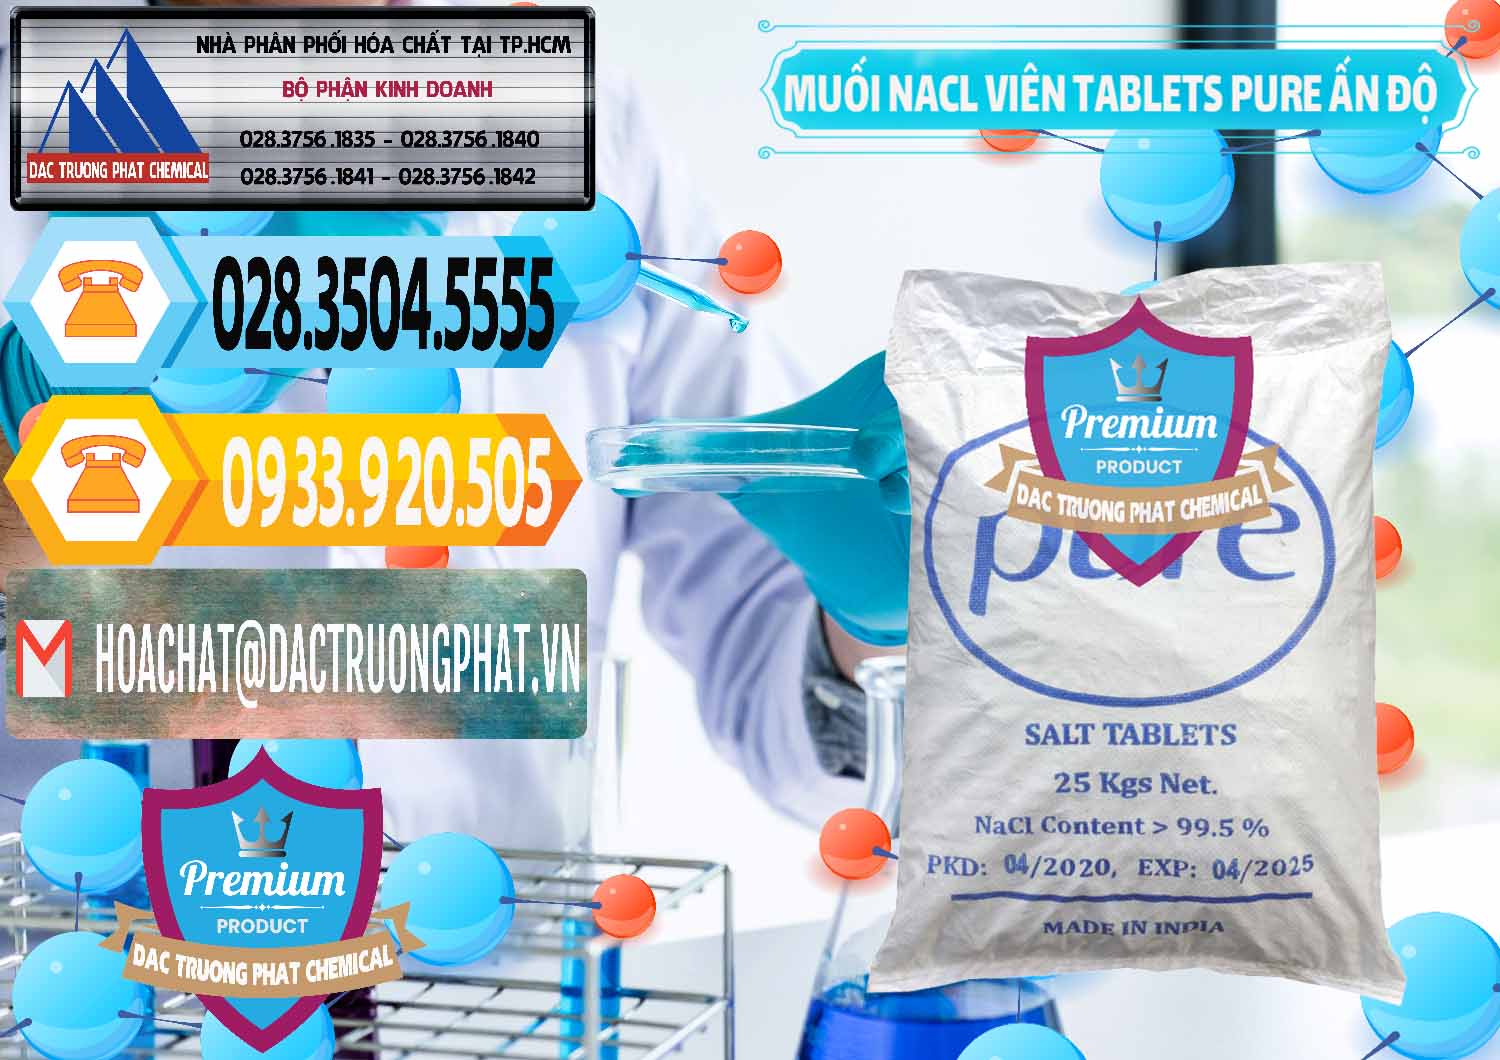 Nơi chuyên bán và phân phối Muối NaCL – Sodium Chloride Dạng Viên Tablets Pure Ấn Độ India - 0294 - Đơn vị chuyên cung cấp và bán hóa chất tại TP.HCM - hoachattayrua.net